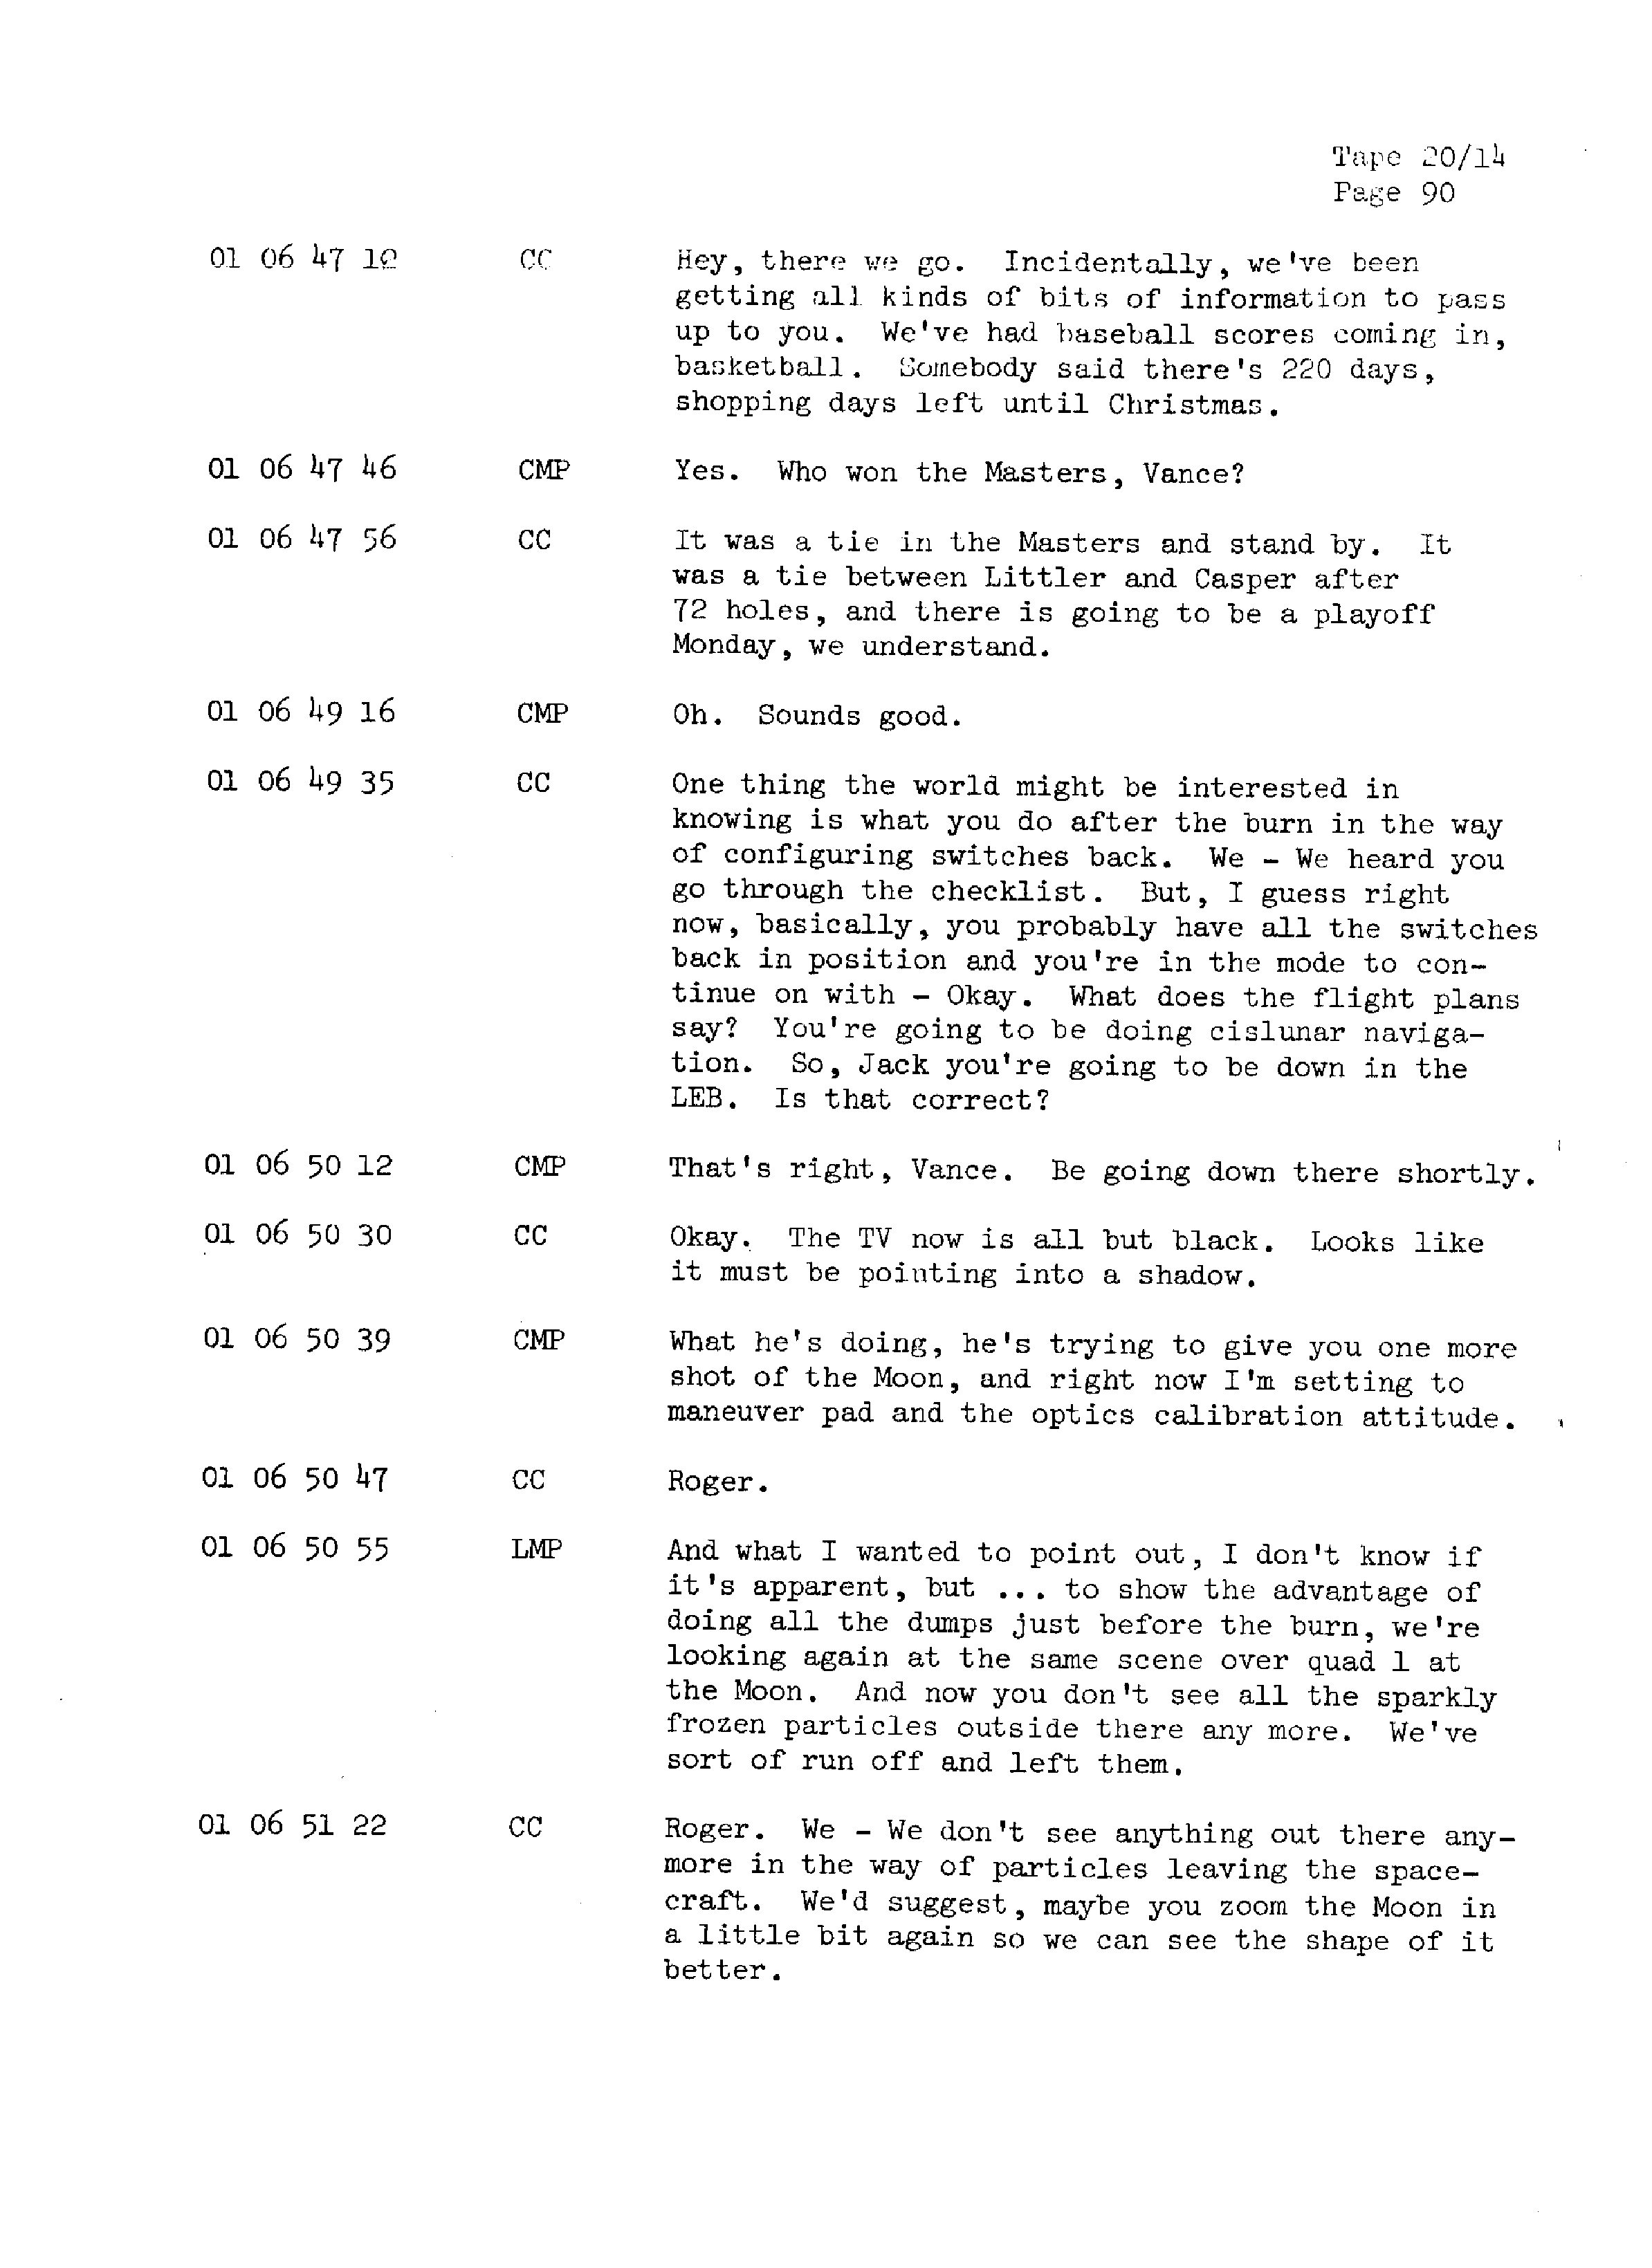 Page 97 of Apollo 13’s original transcript